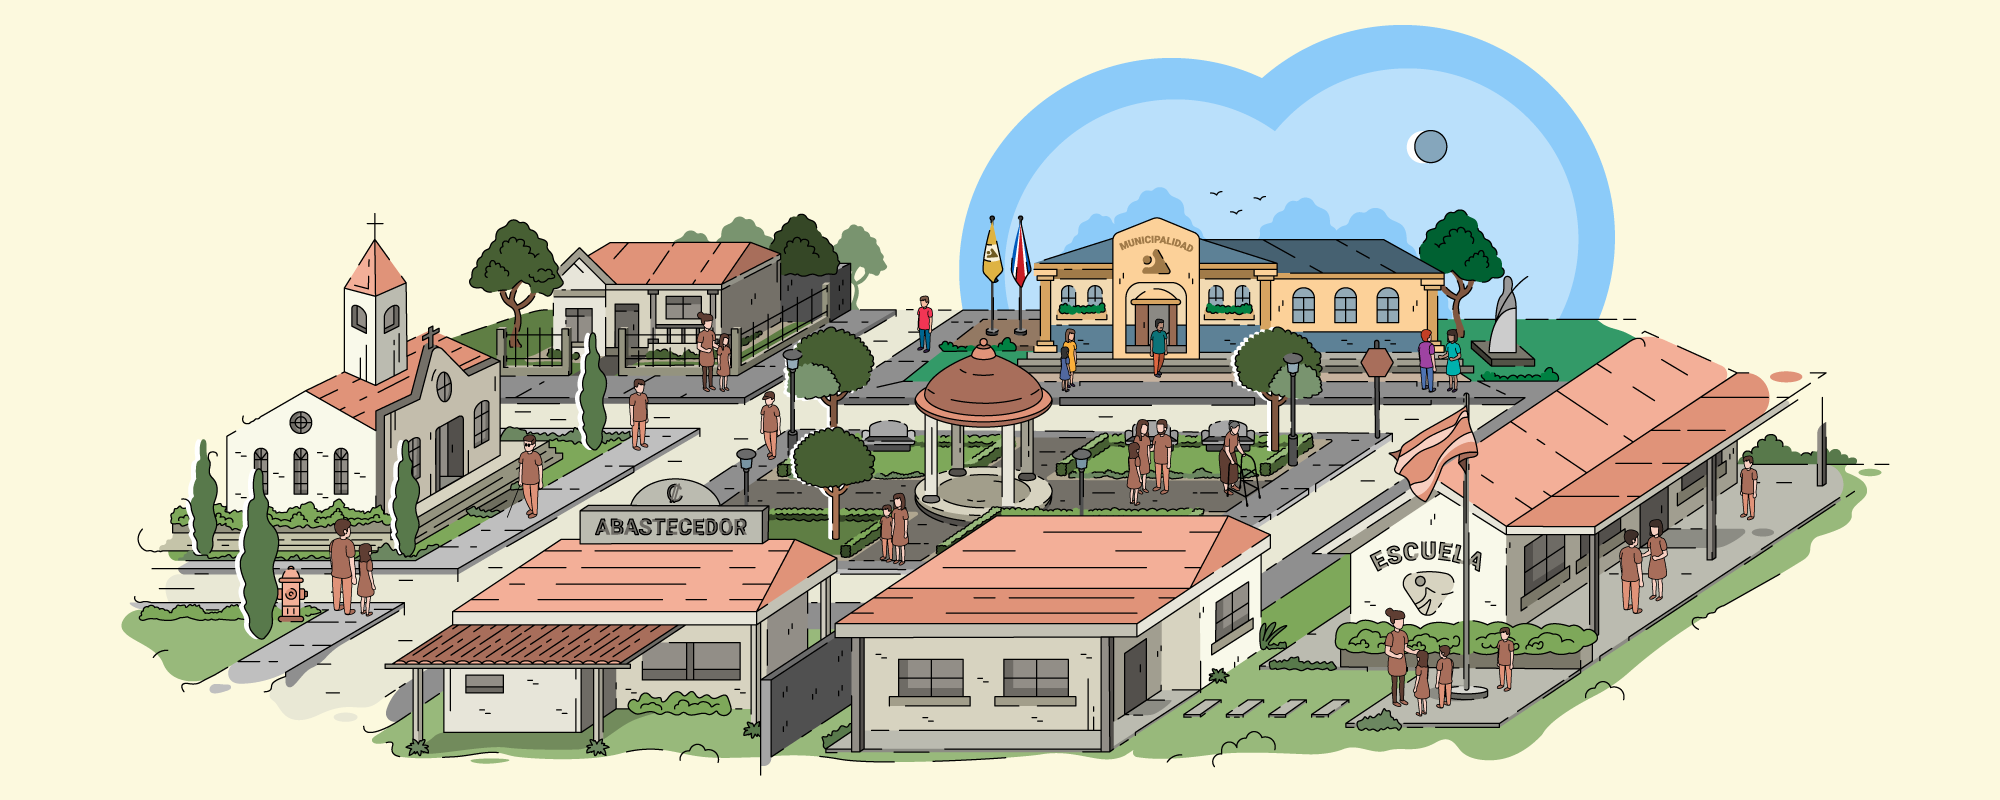 Ilustración de pueblo típico costarricense. Se pueden observar casas, negocios, una iglesia, una escuela, un parque, un edificio municipal y personas en espacios públicos